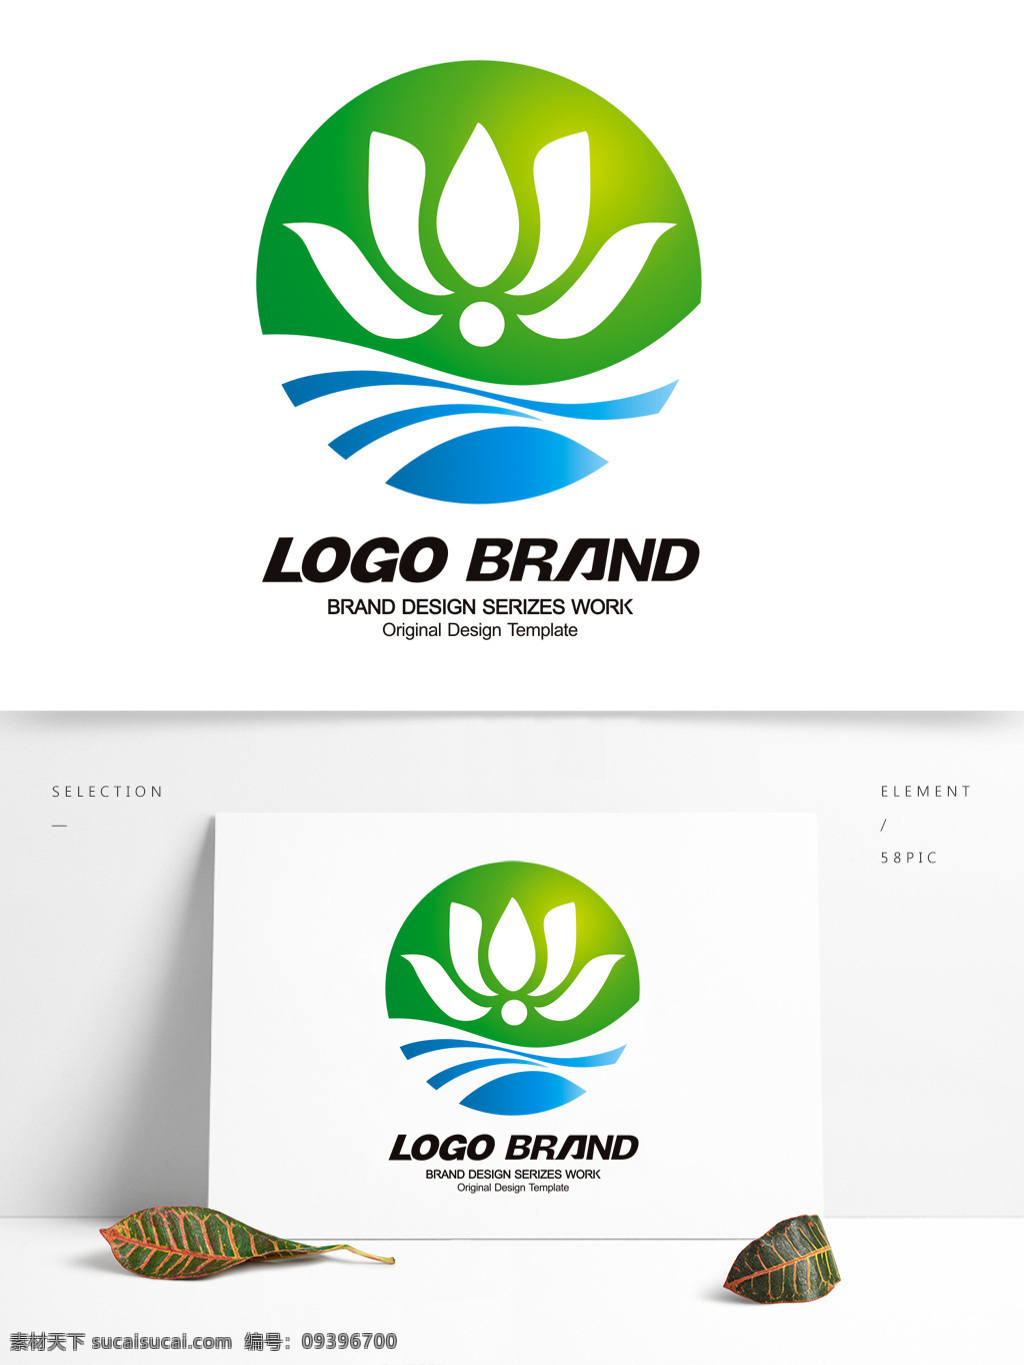 矢量 创意 蓝绿 荷花 公司 标志 logo j 字母 标志设计 s 荷花标志设计 荷花logo 公司标志设计 企业 会徽标志设计 企业标志设计